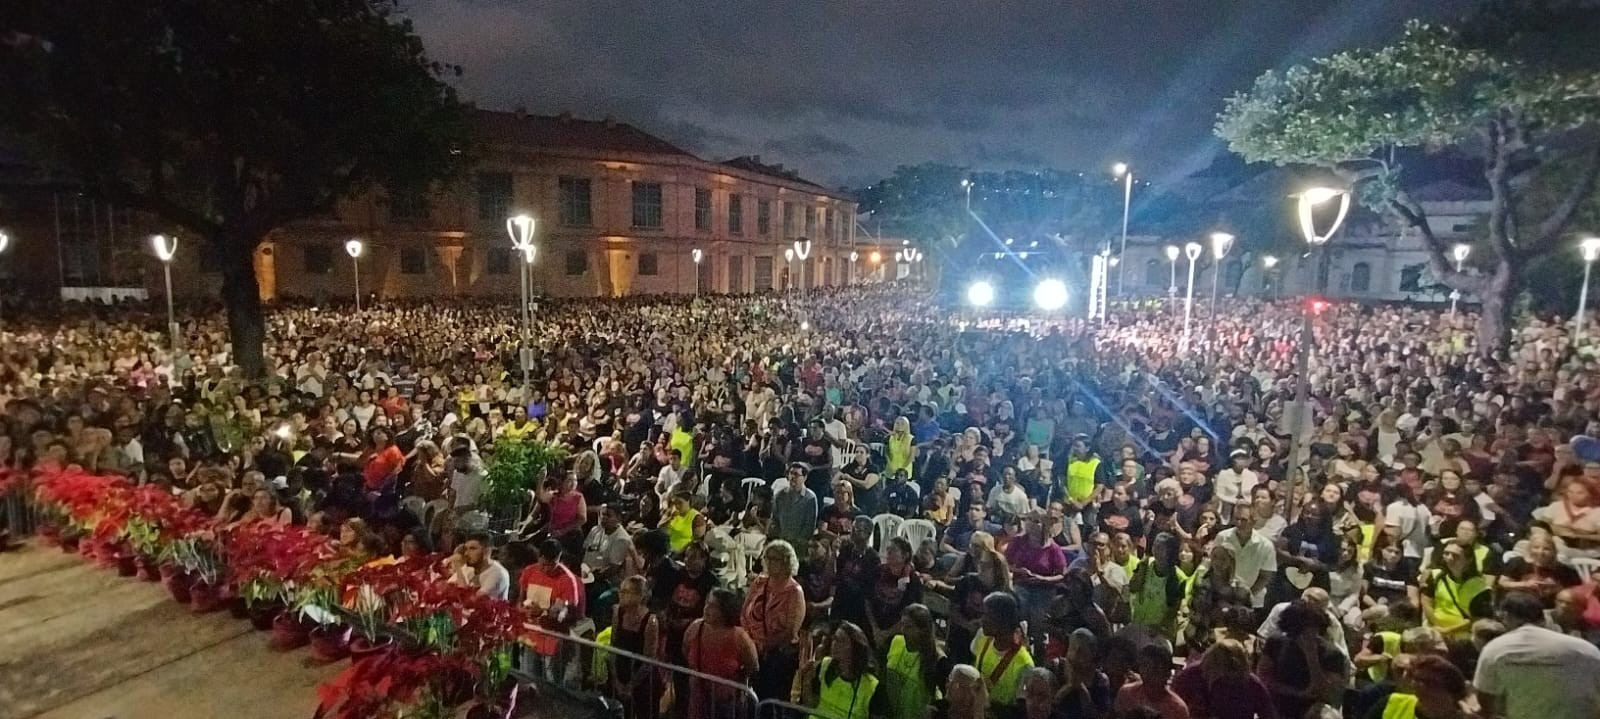 Última do ano: Missa do Impossível reúne milhares de fiéis na Praça Antônio Carlos, em Juiz de Fora 